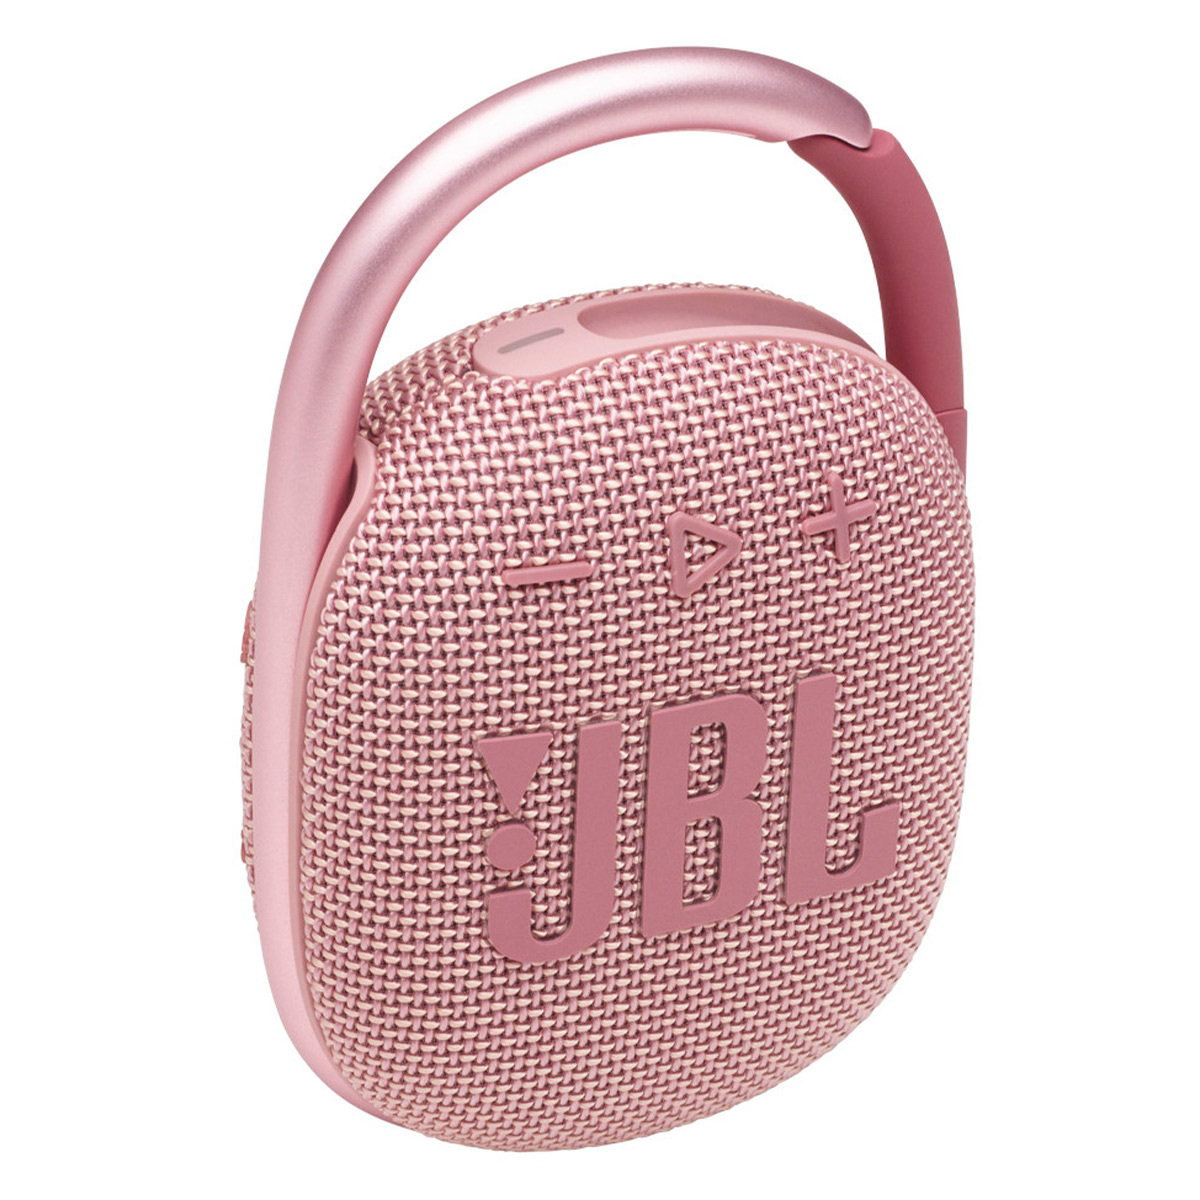 JBL Clip 4 Portable Bluetooth Waterproof Speaker (Pink) - image 2 of 8